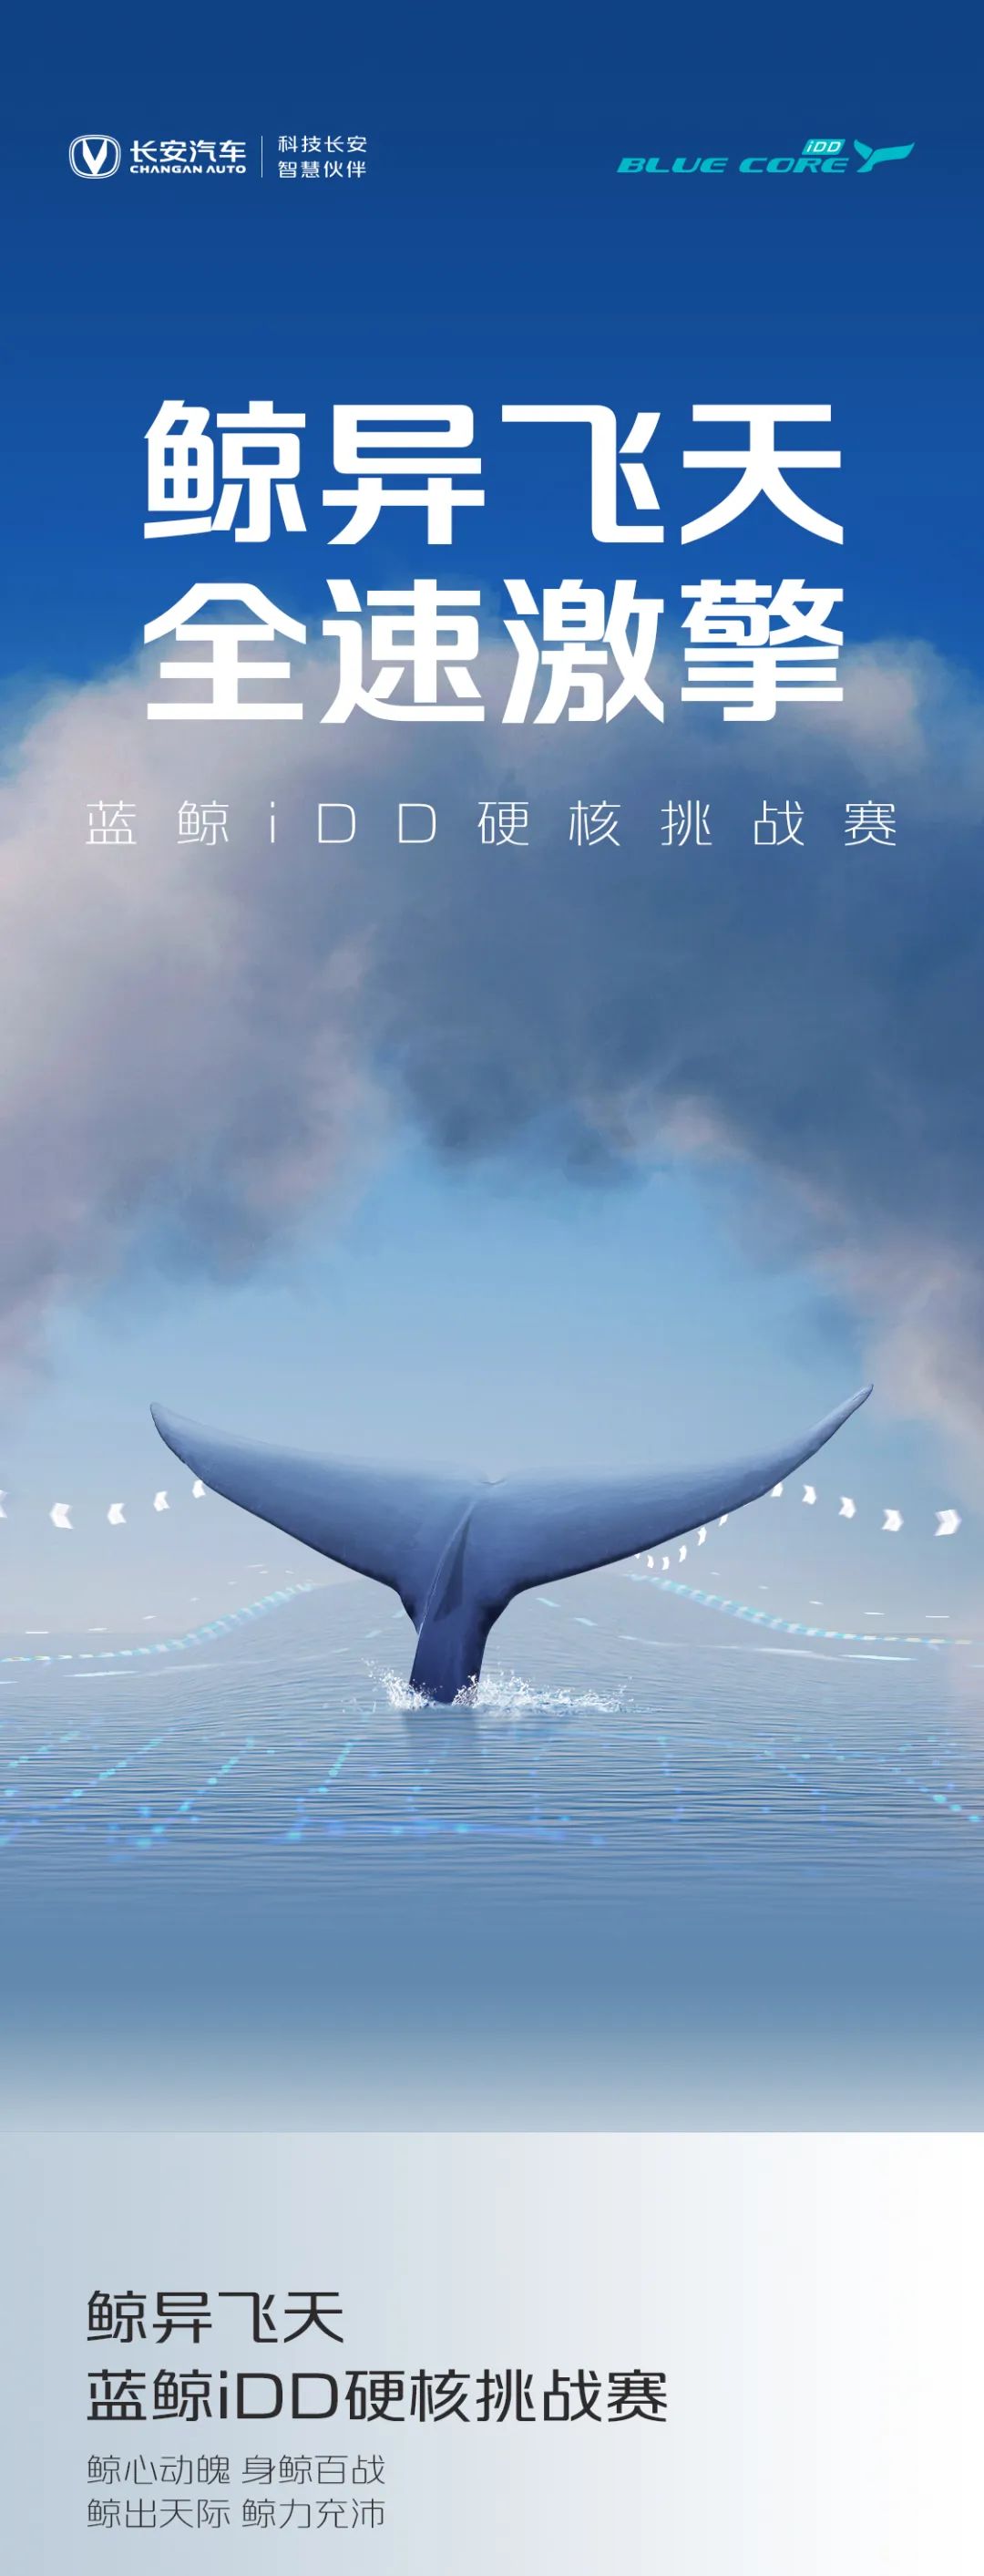 点击查看详细信息<br>标题：蓝鲸iDD硬核挑战赛丨高能无惧挑战 阅读次数：394